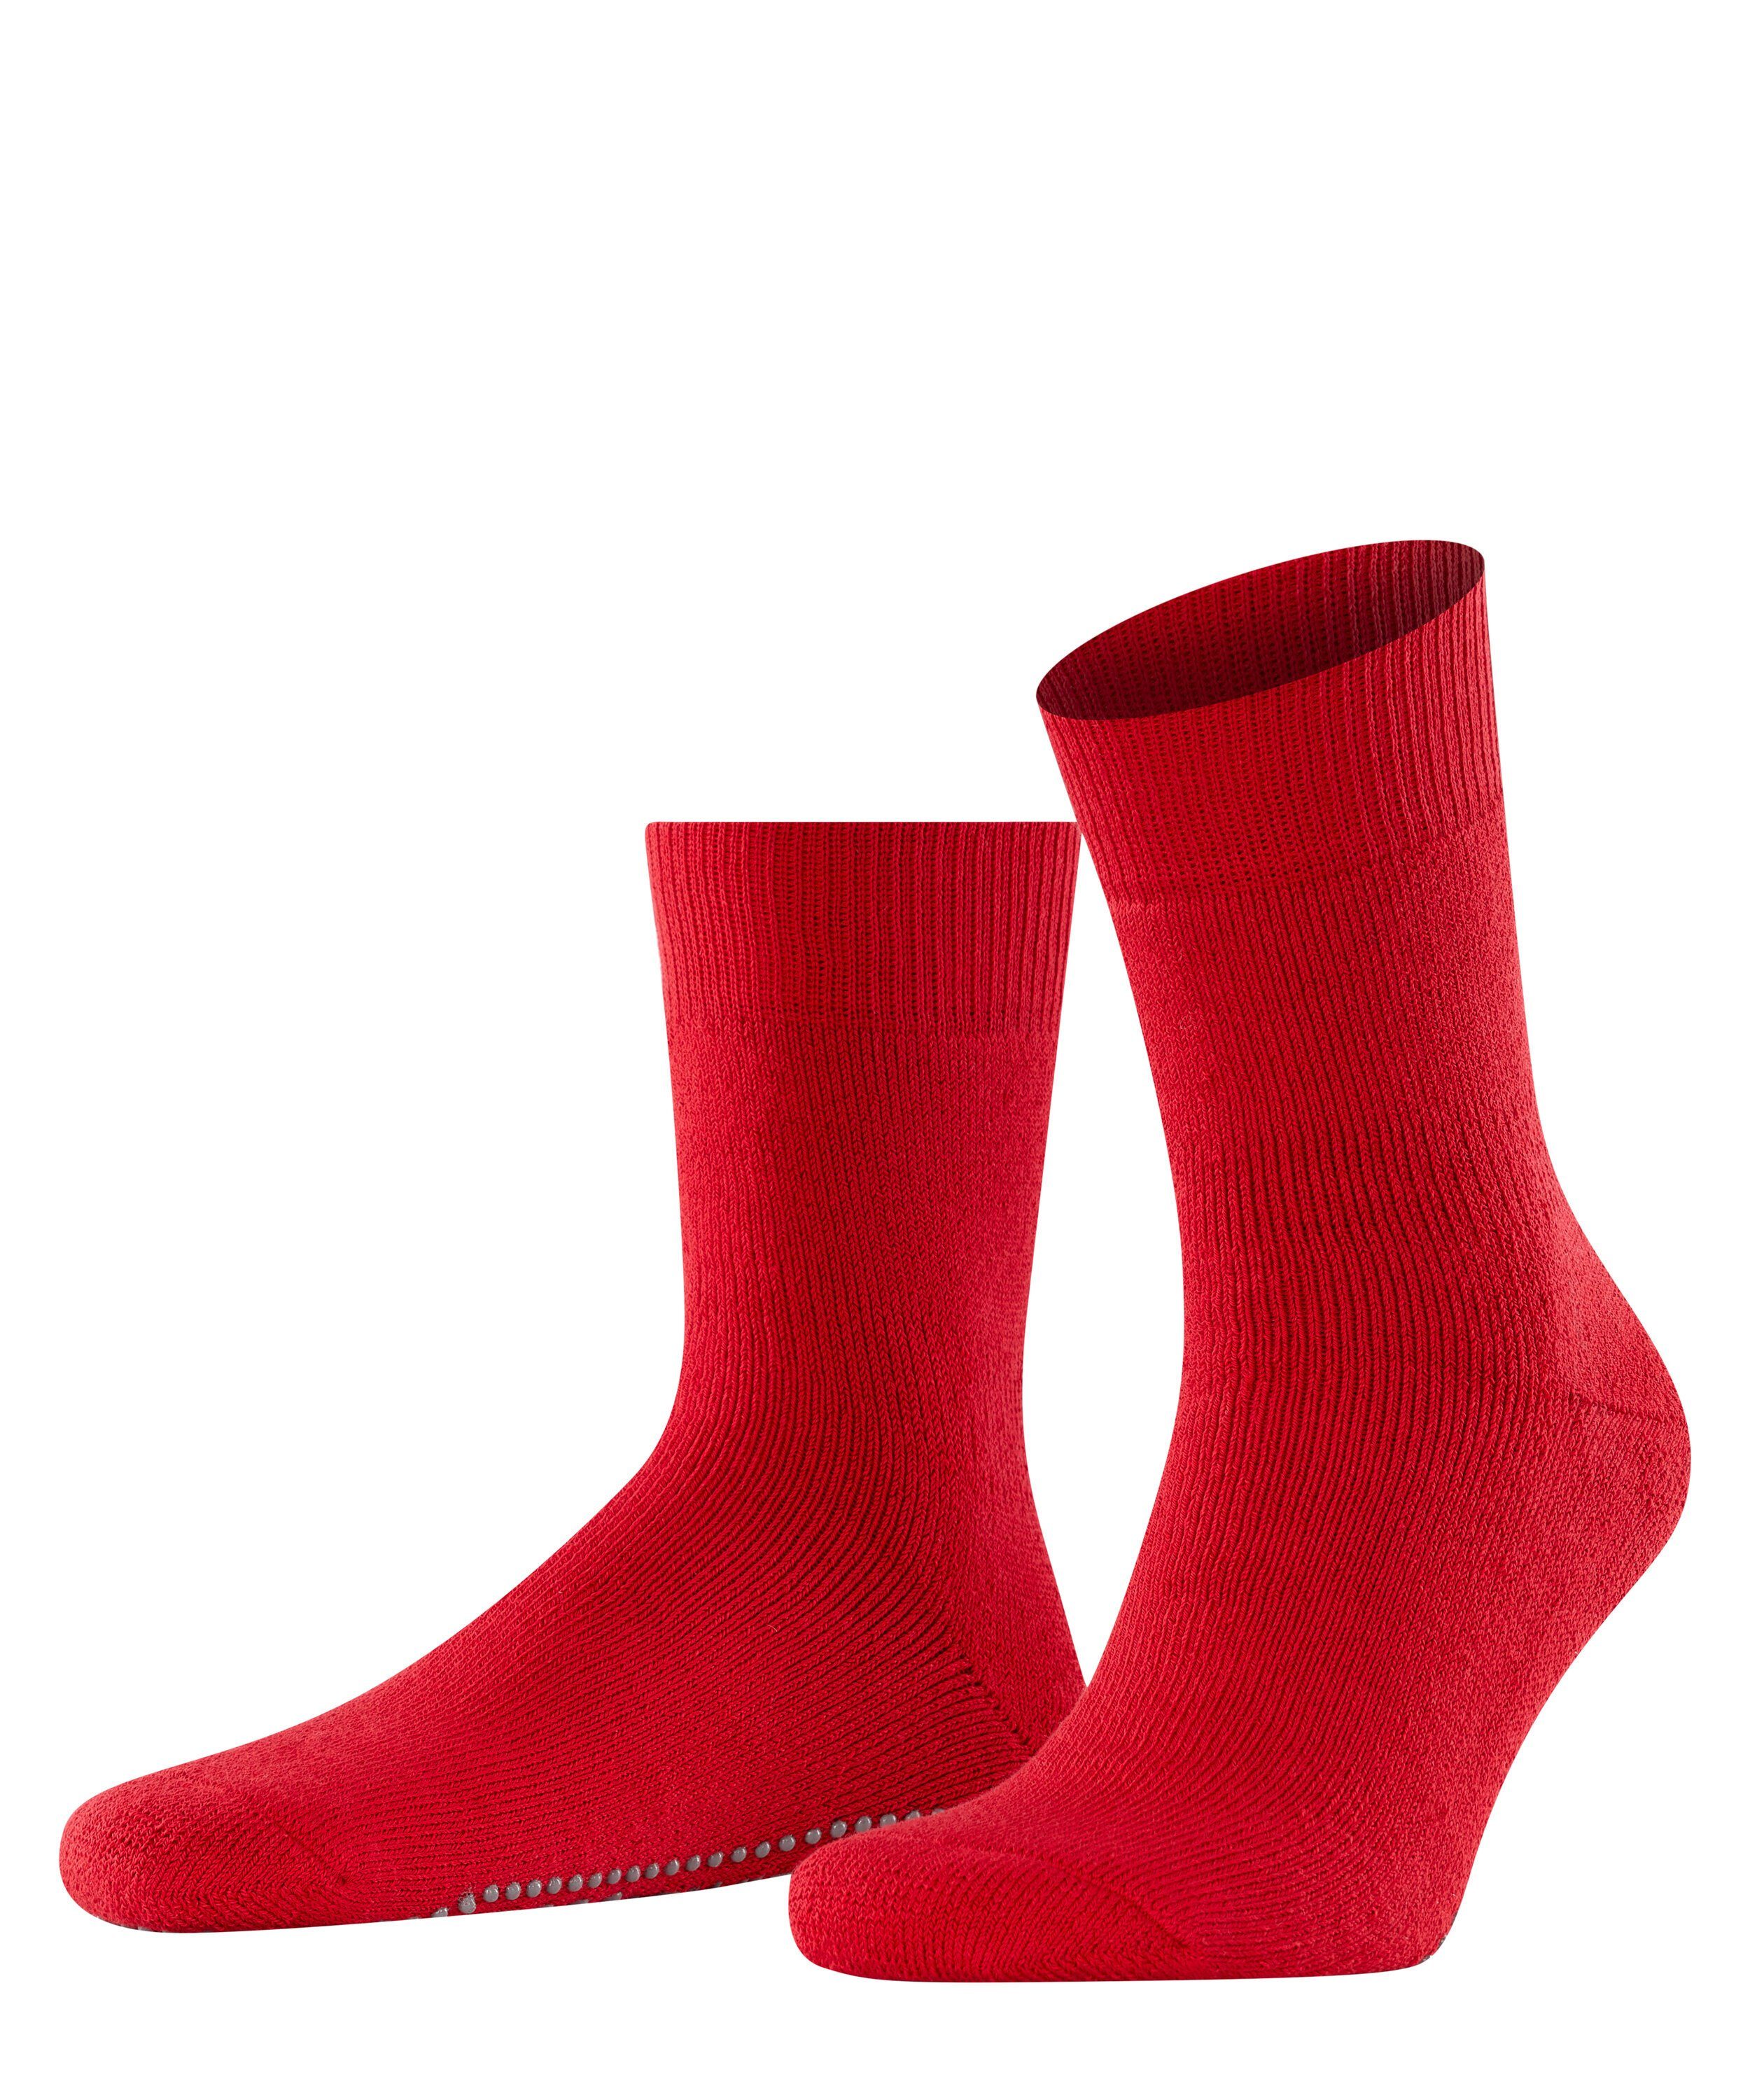 FALKE Socken Homepads (1-Paar) scarlet (8280)